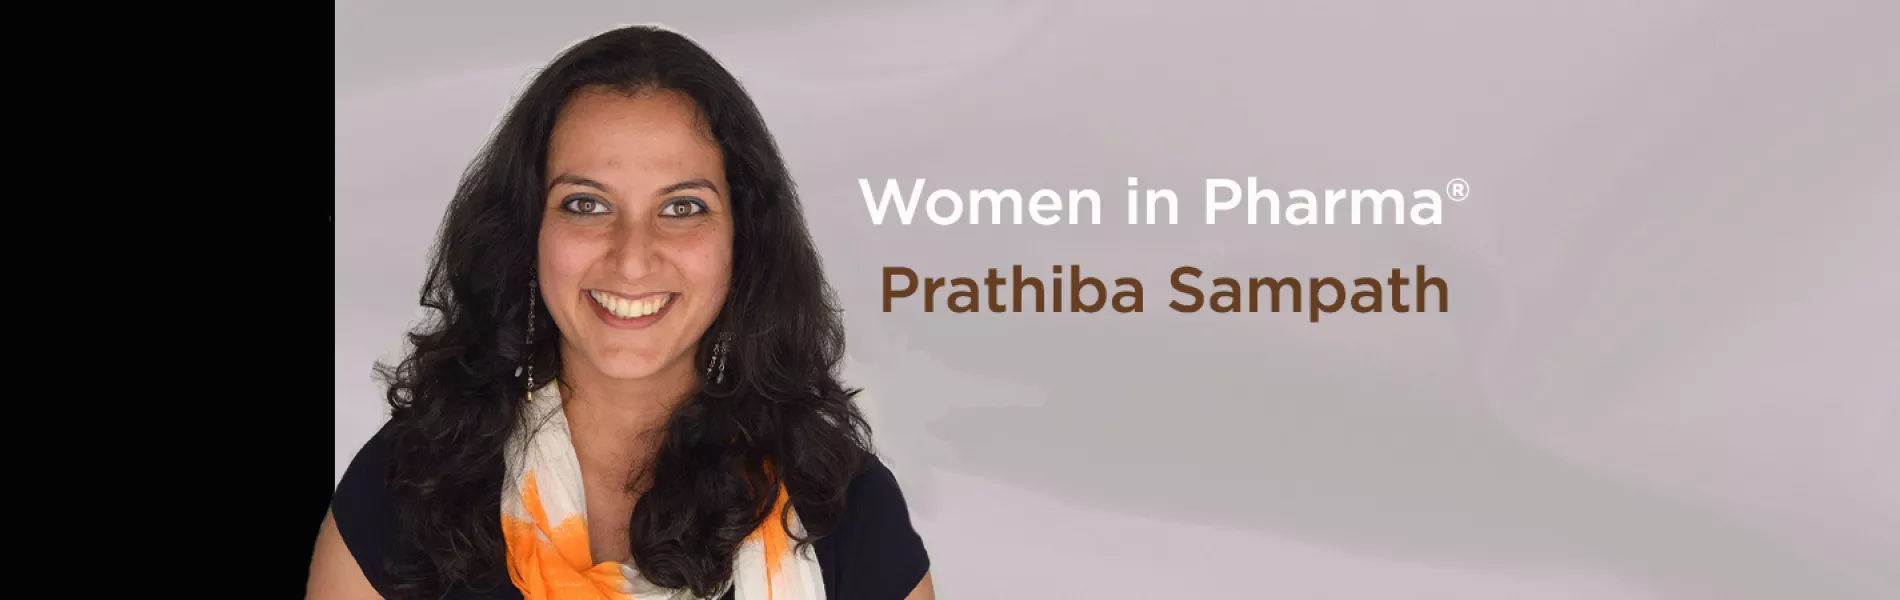 Women in Pharma®: Forged in the Crucible -Prathiba Sampath